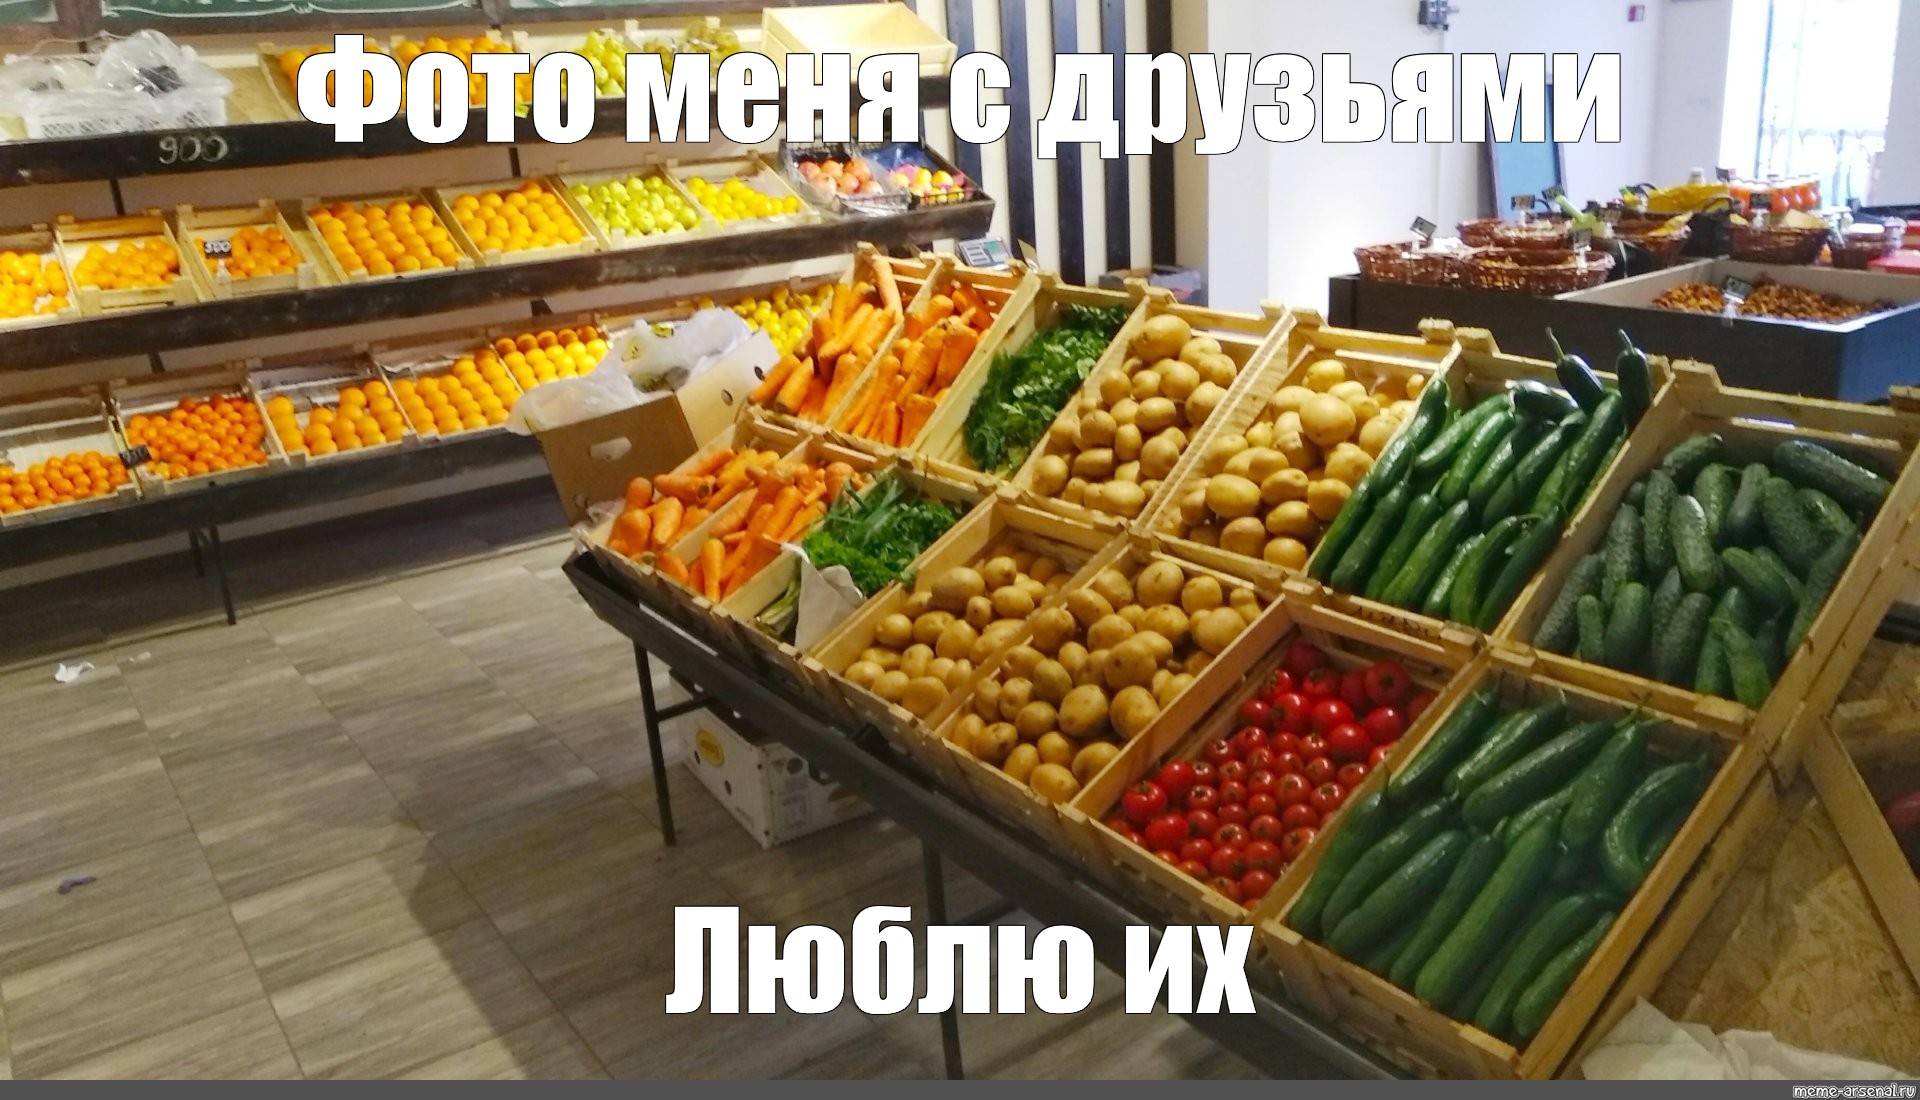 Продажа овощей магазины. Овощной прилавок. Овощи на прилавке. Выкладка овощей. Прилавок с овощами и фруктами.